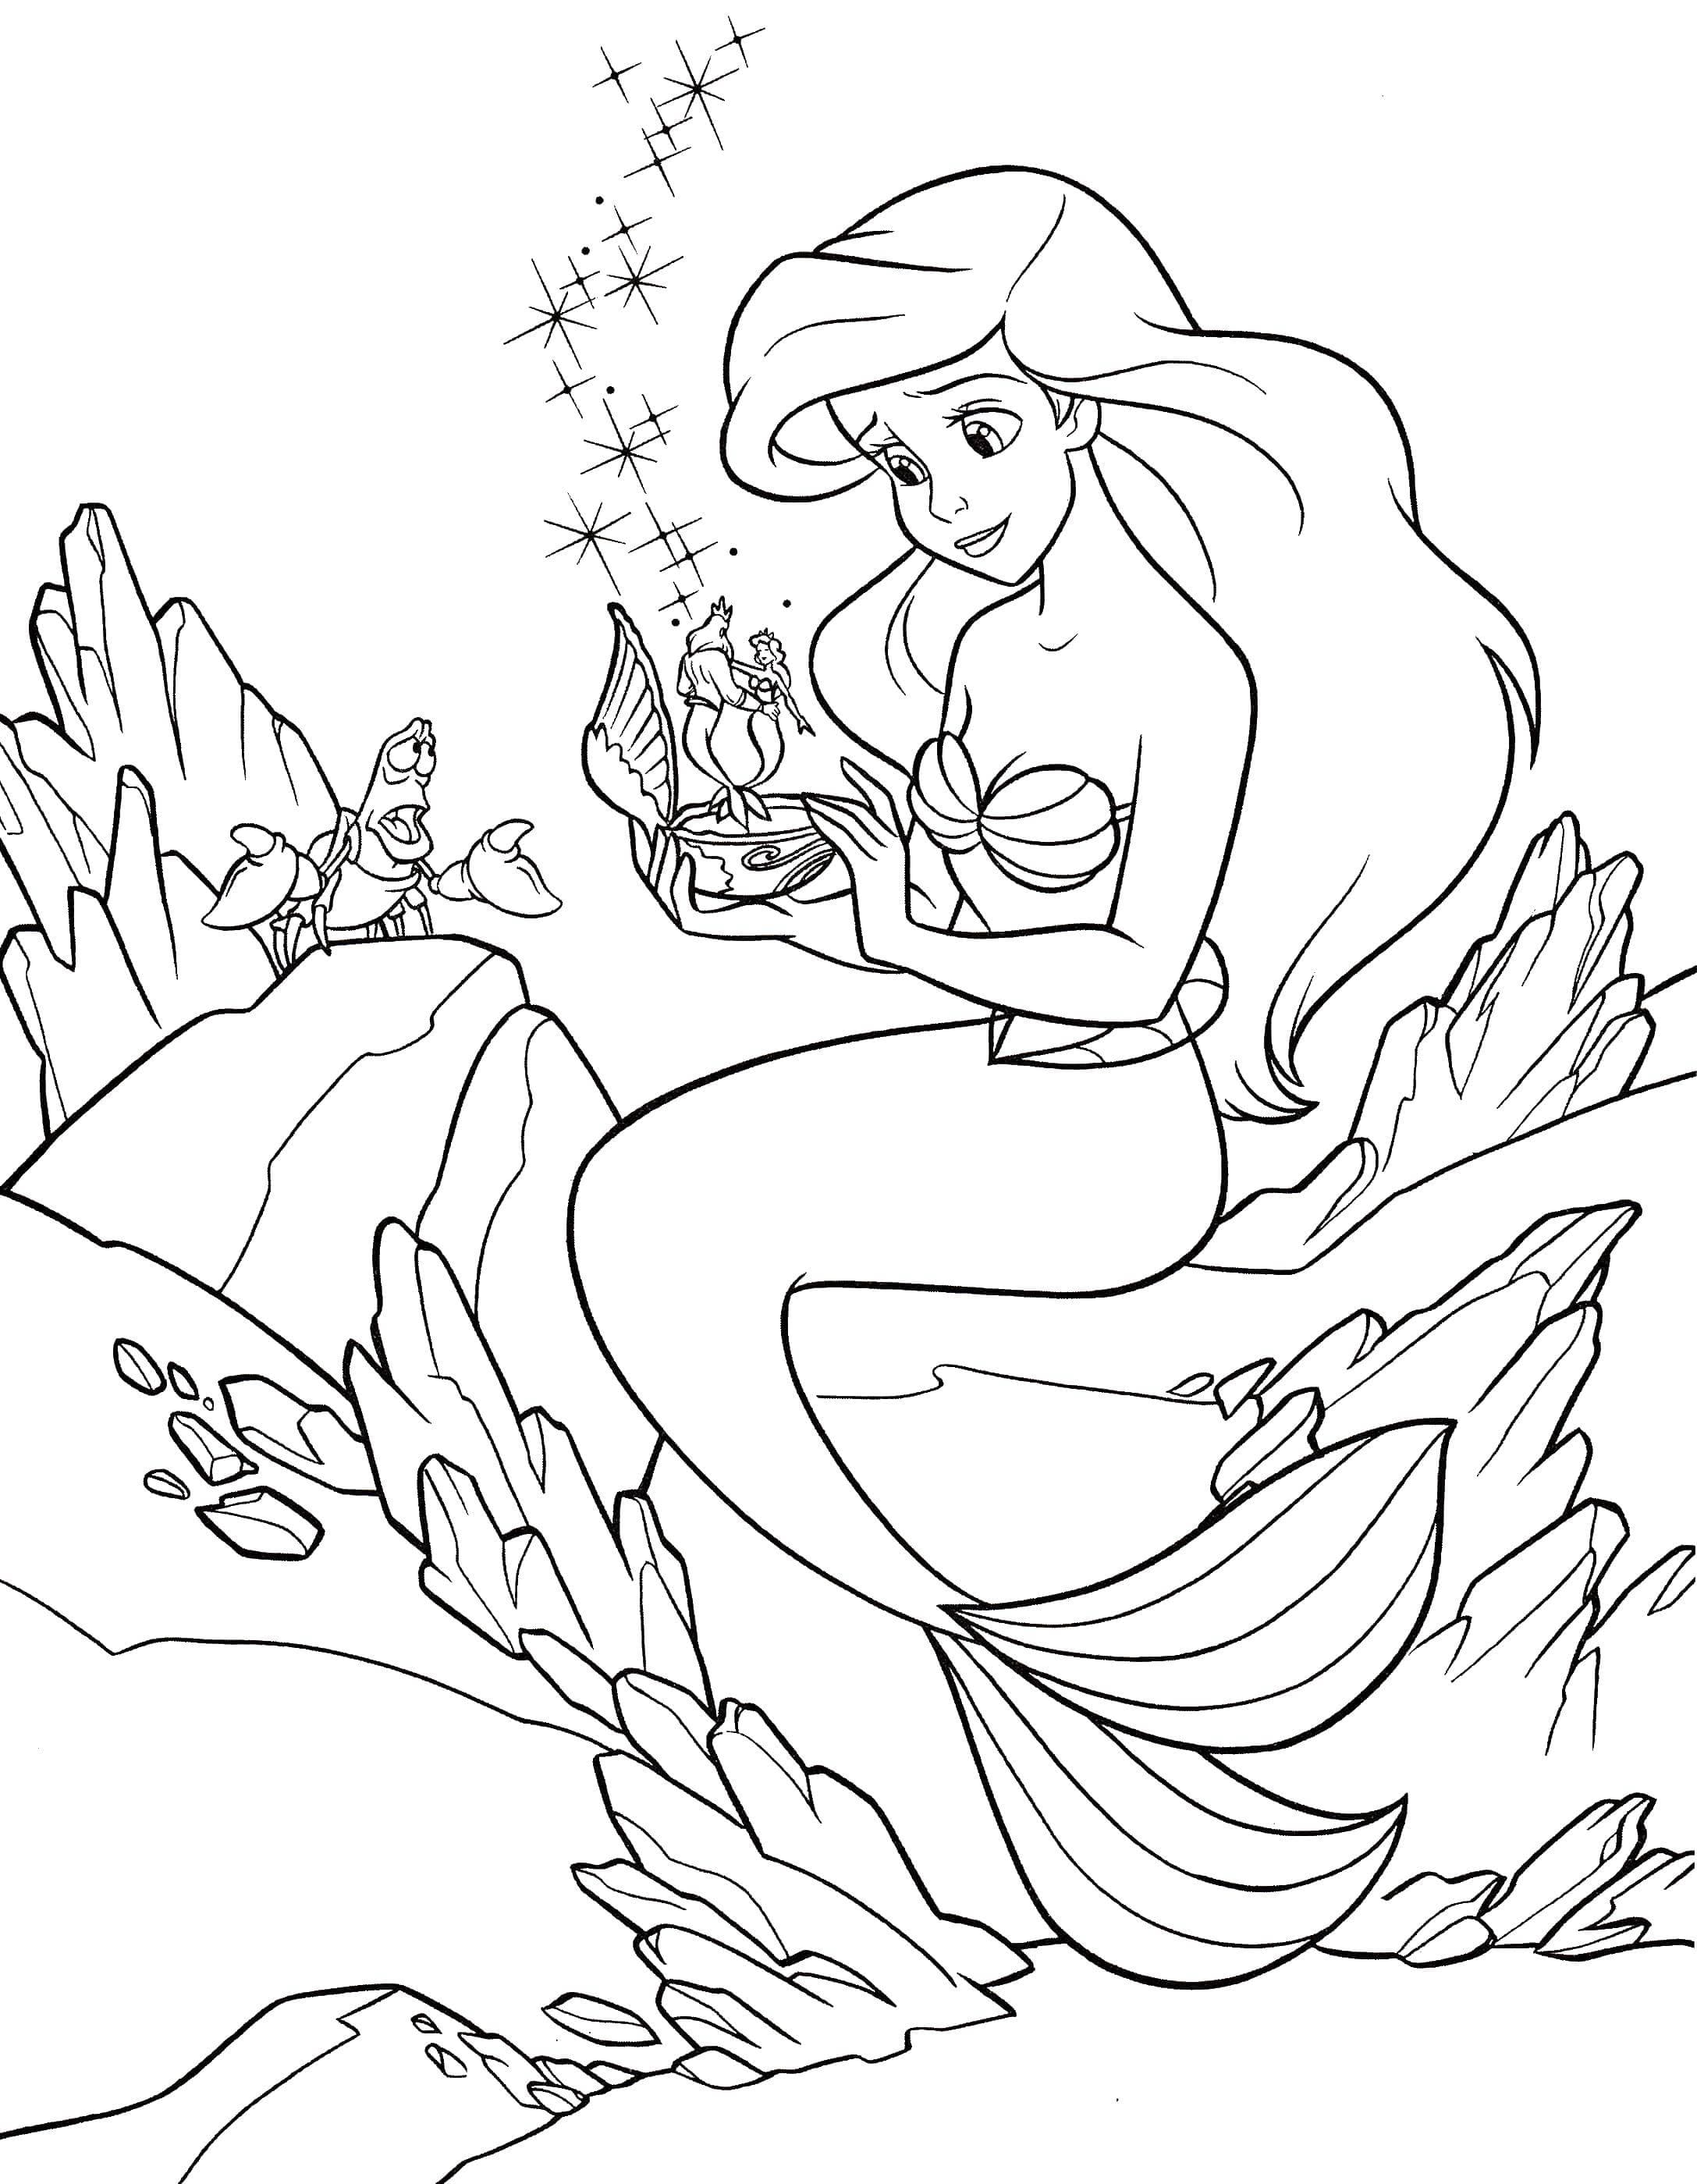 Dibujo de Ariel 22 de La sirenita para imprimir y colorear